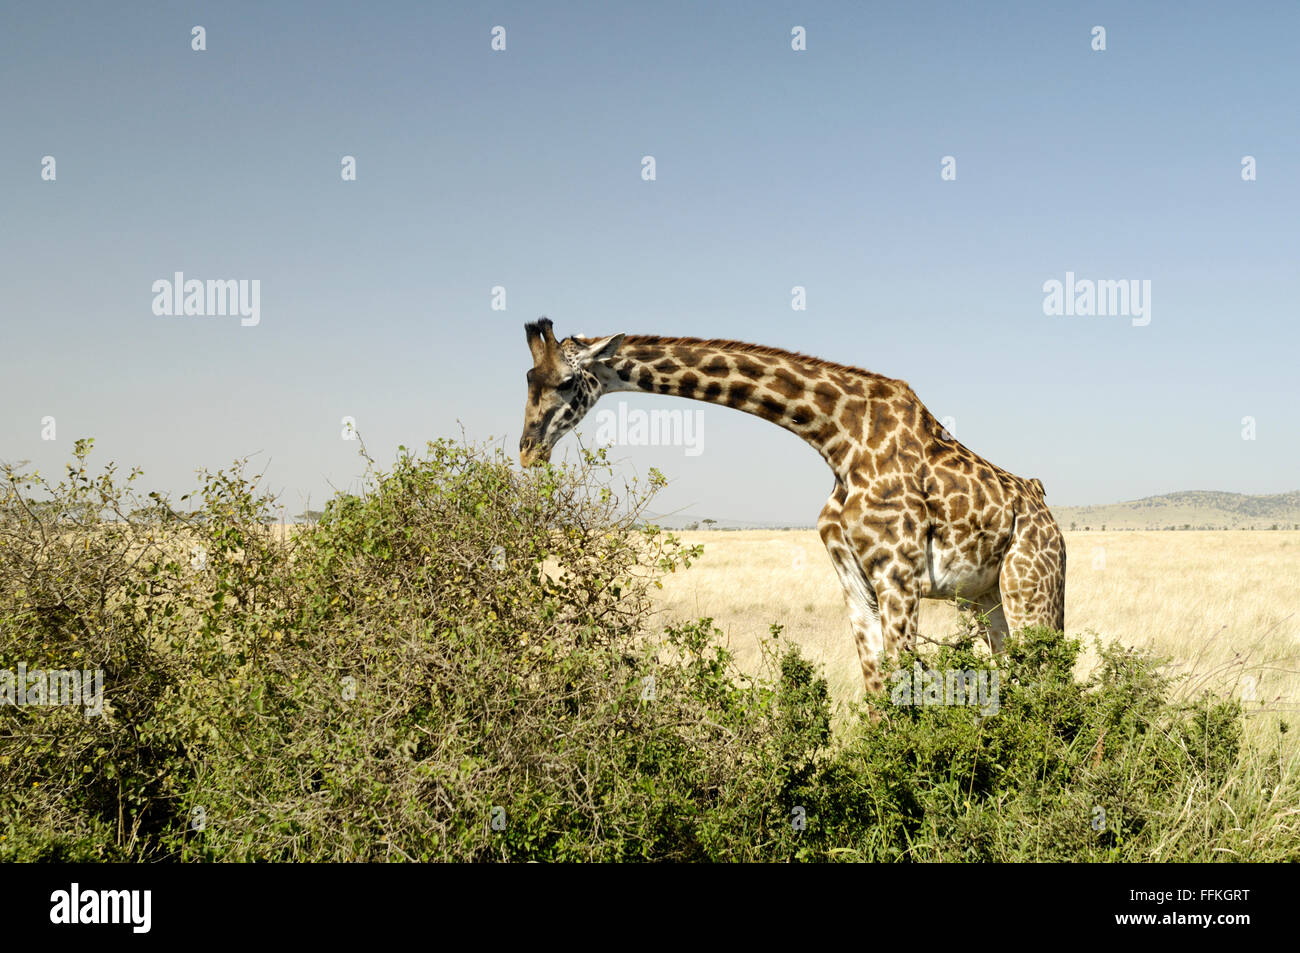 Giraffe eating in the Serengeti Stock Photo